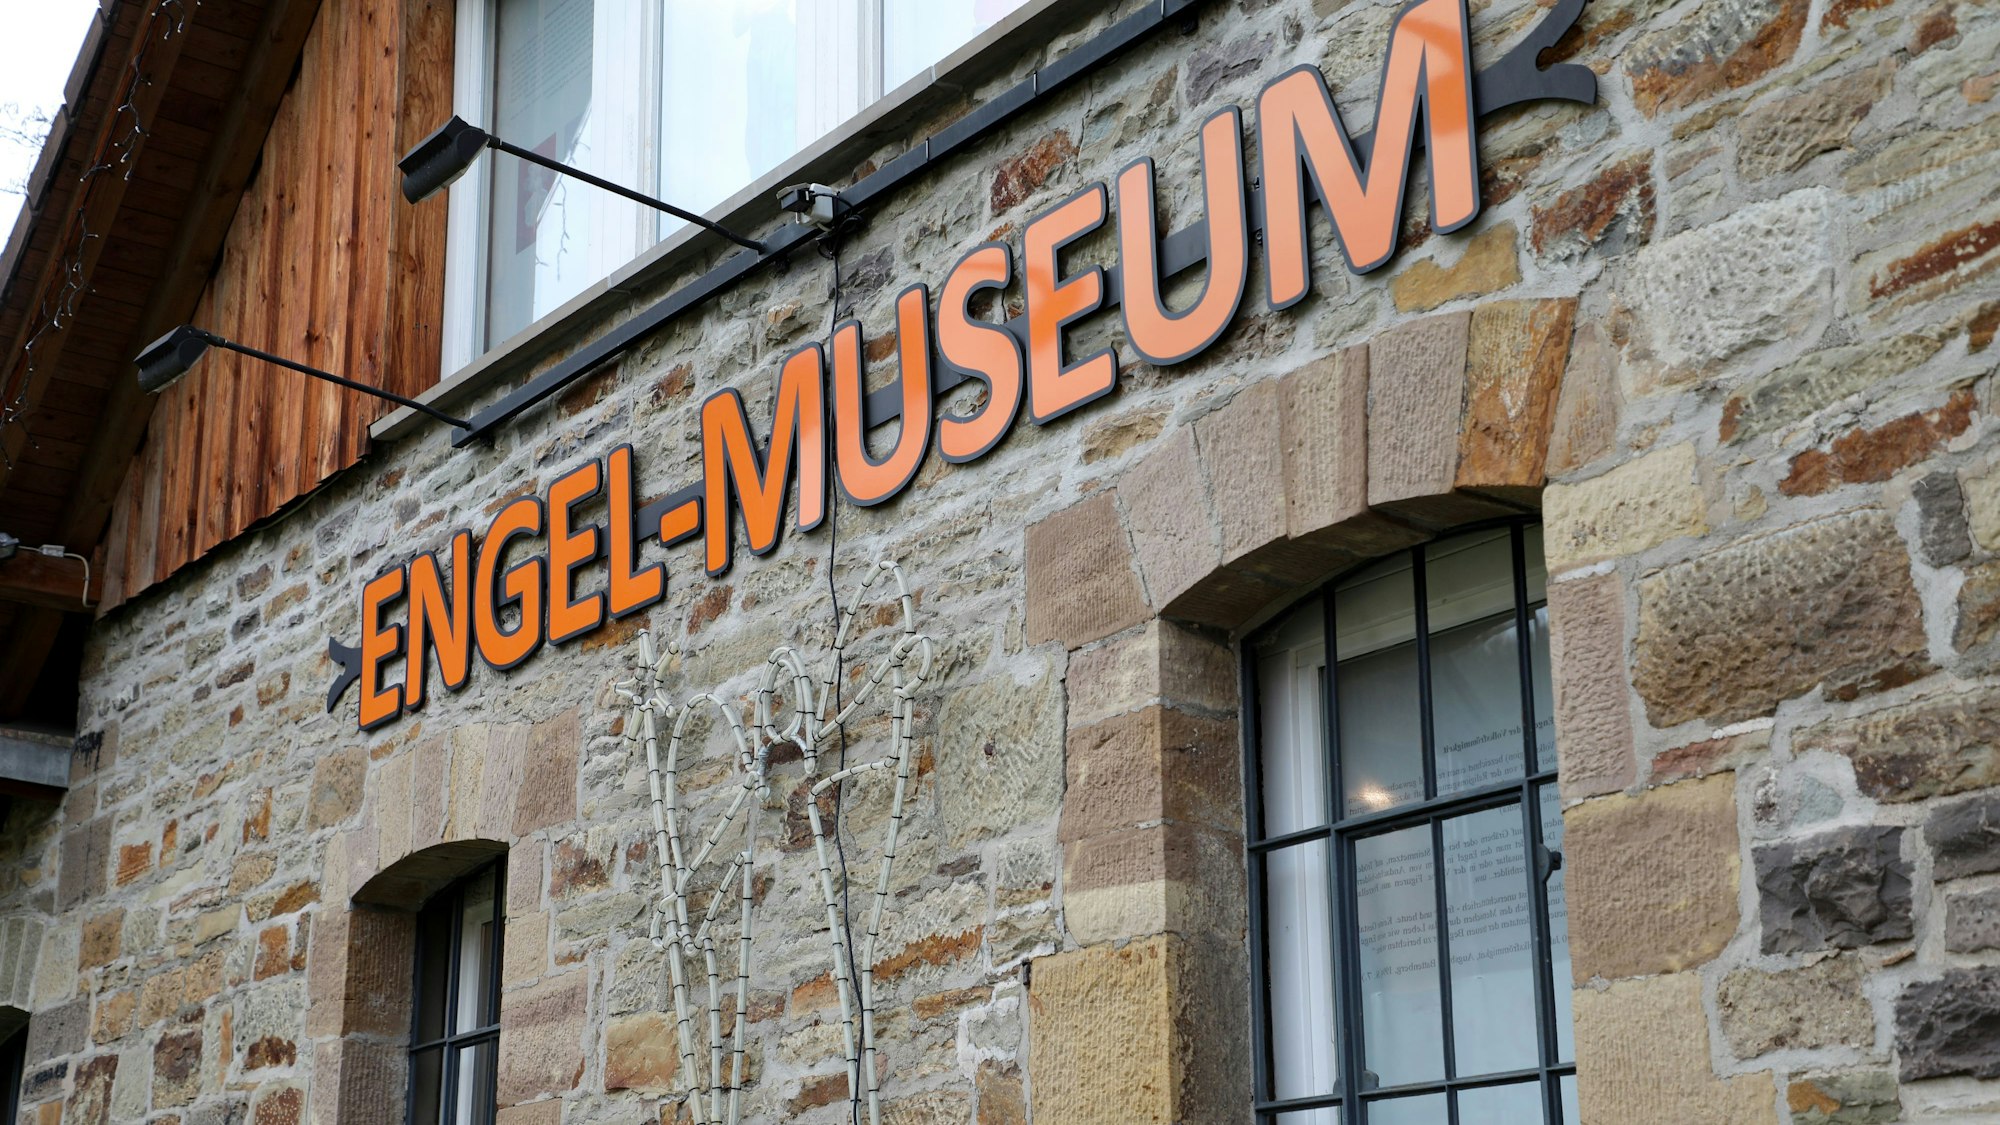 Das Engel-Museum von außen mit dem entsprechenden Schriftzug